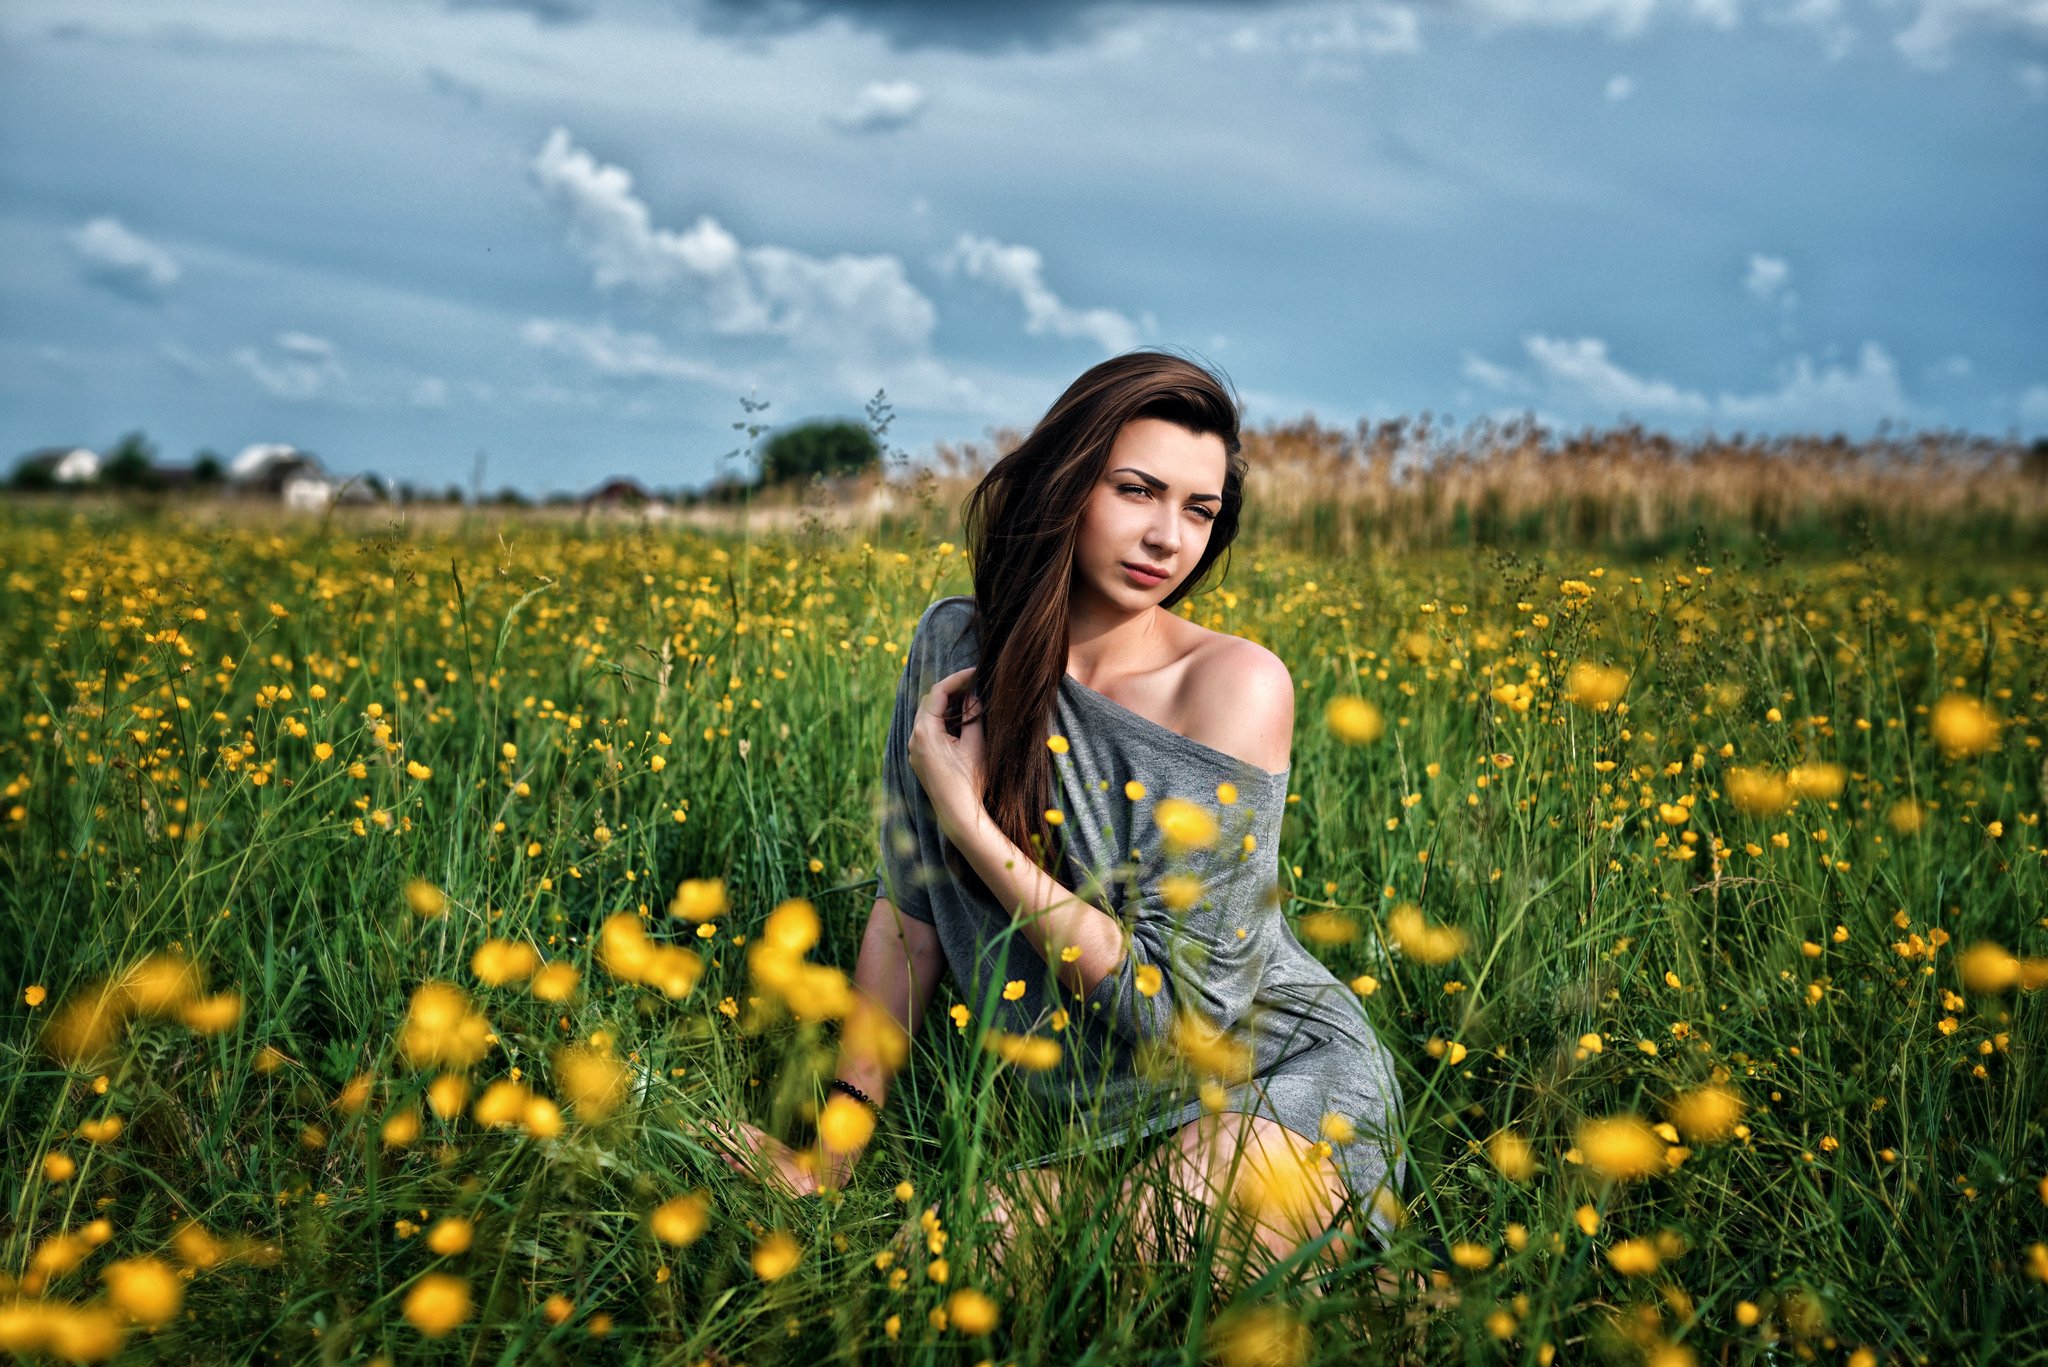 Фото девушки с силиконовой грудью на фоне цветочной клумбы